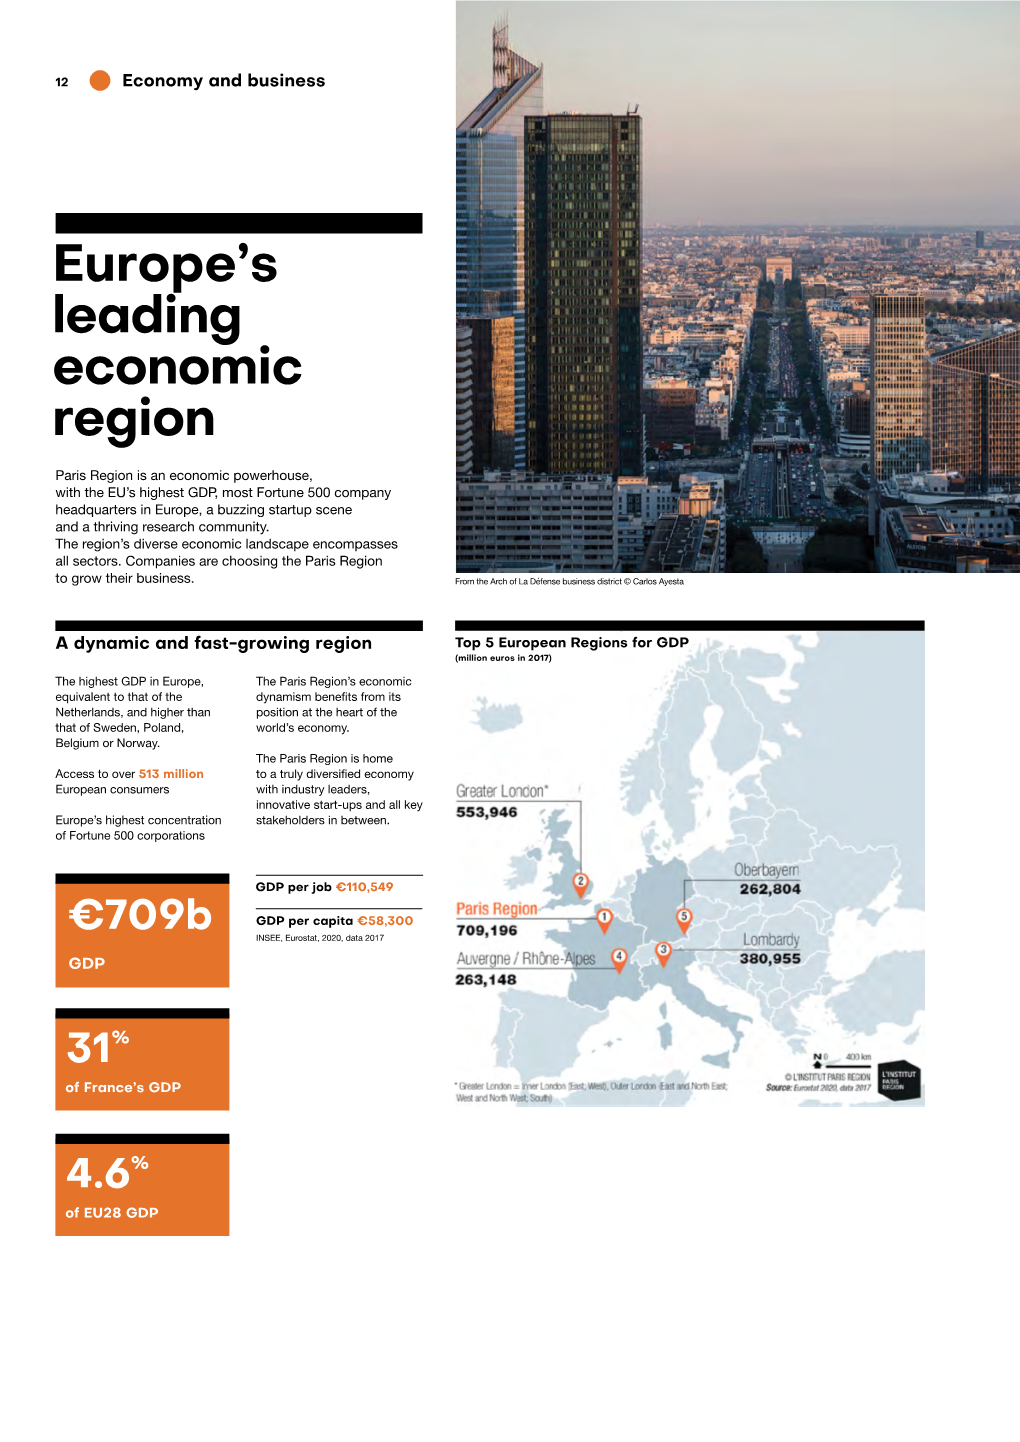 Europe's Leading Economic Region